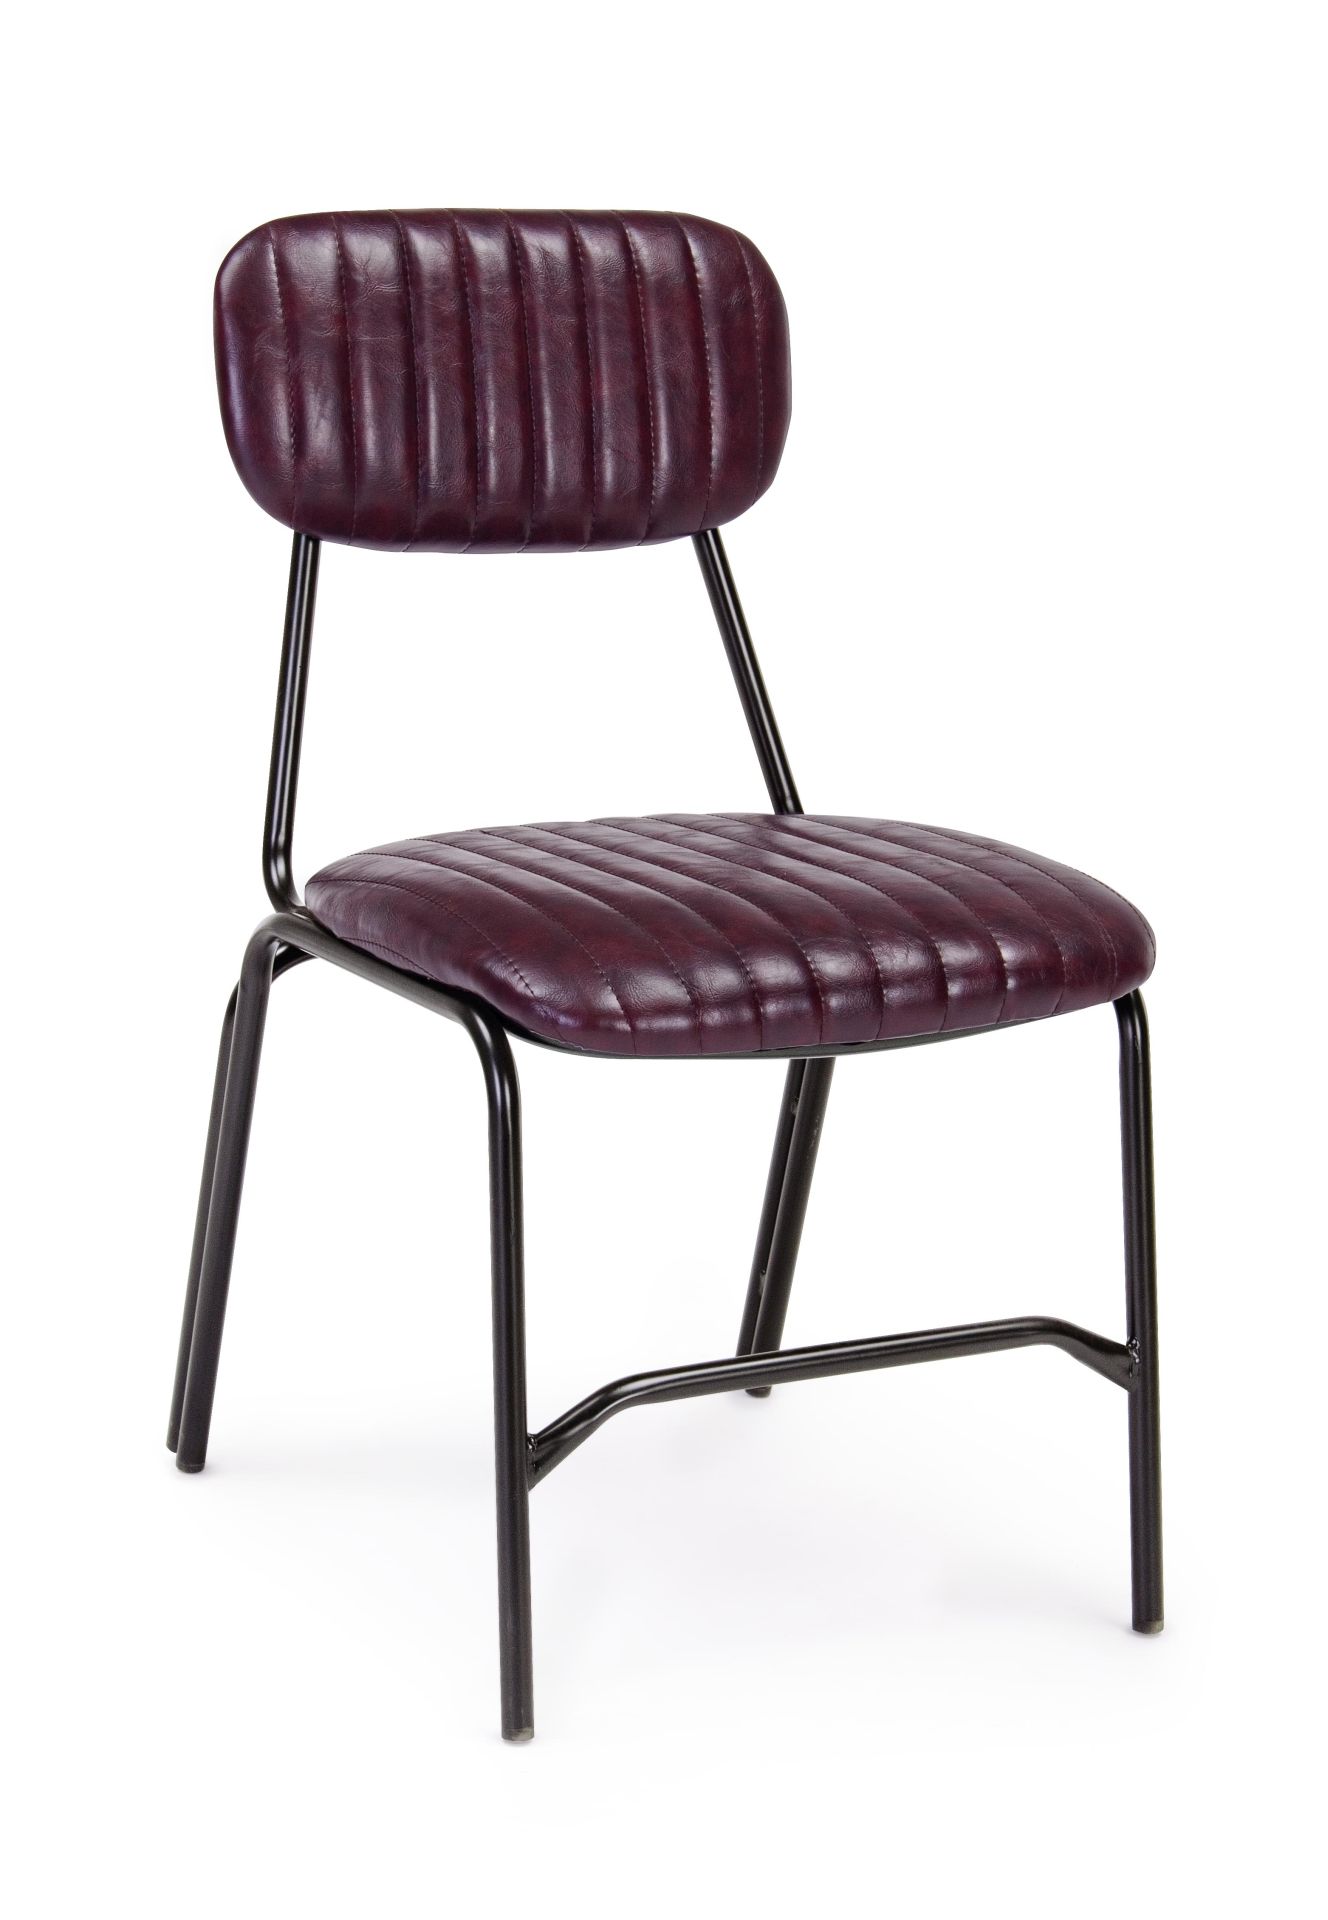 Der Stuhl Debbie überzeugt mit seinem industriellen Design. Gefertigt wurde der Stuhl aus Kunstleder, welches einen weinroten Farbton besitzt. Das Gestell ist aus Metall und ist Schwarz. Die Sitzhöhe beträgt 44 cm.